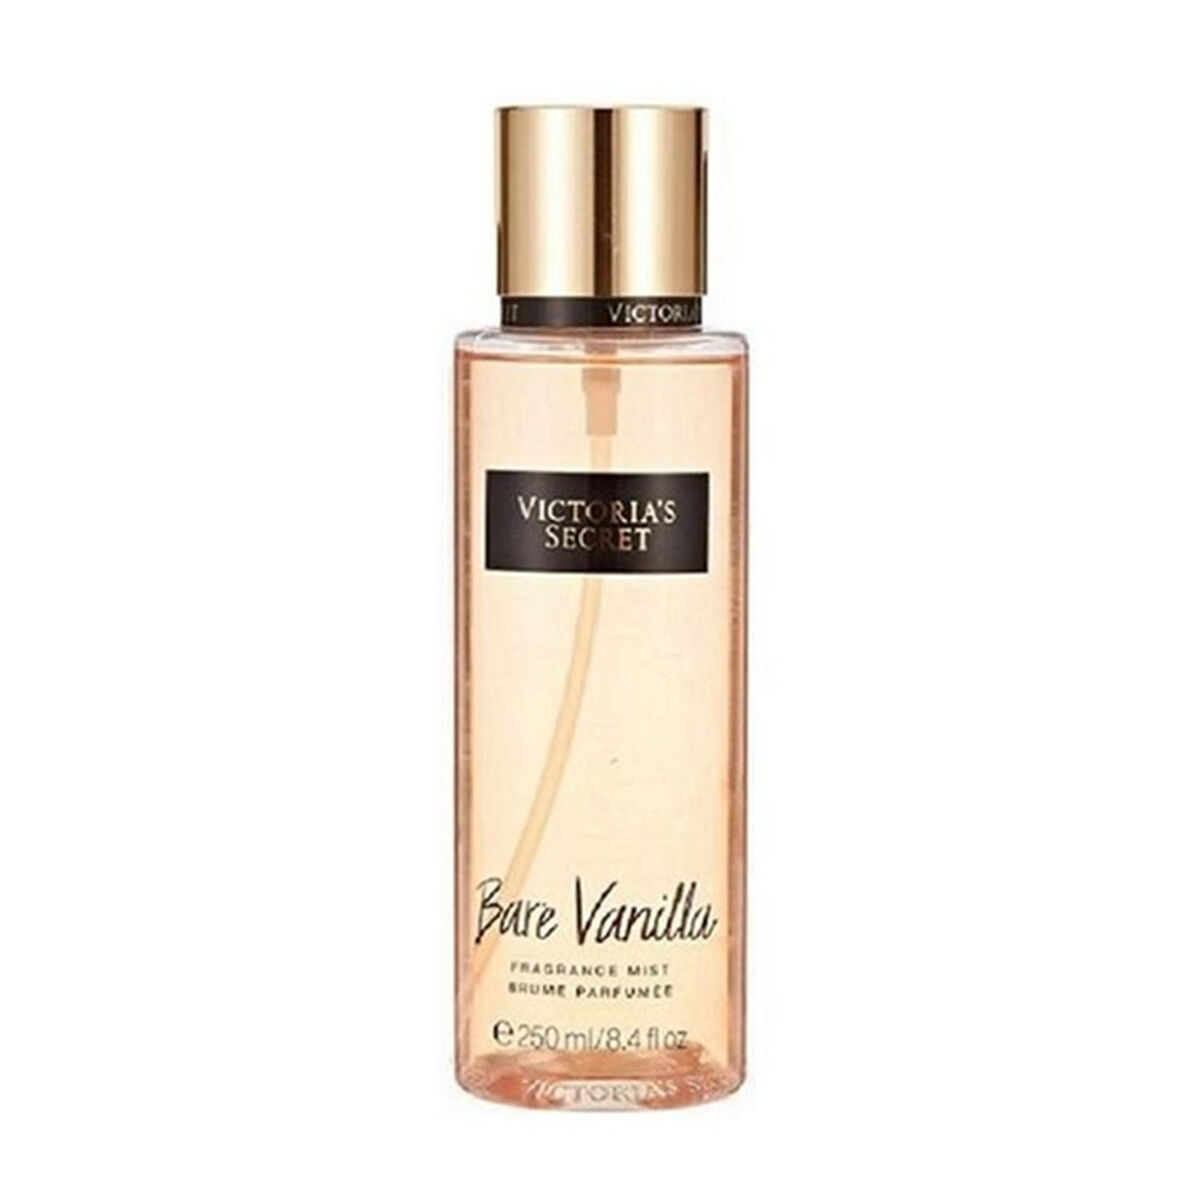 Victoria Secret Bare Vanilla 250ml Splash